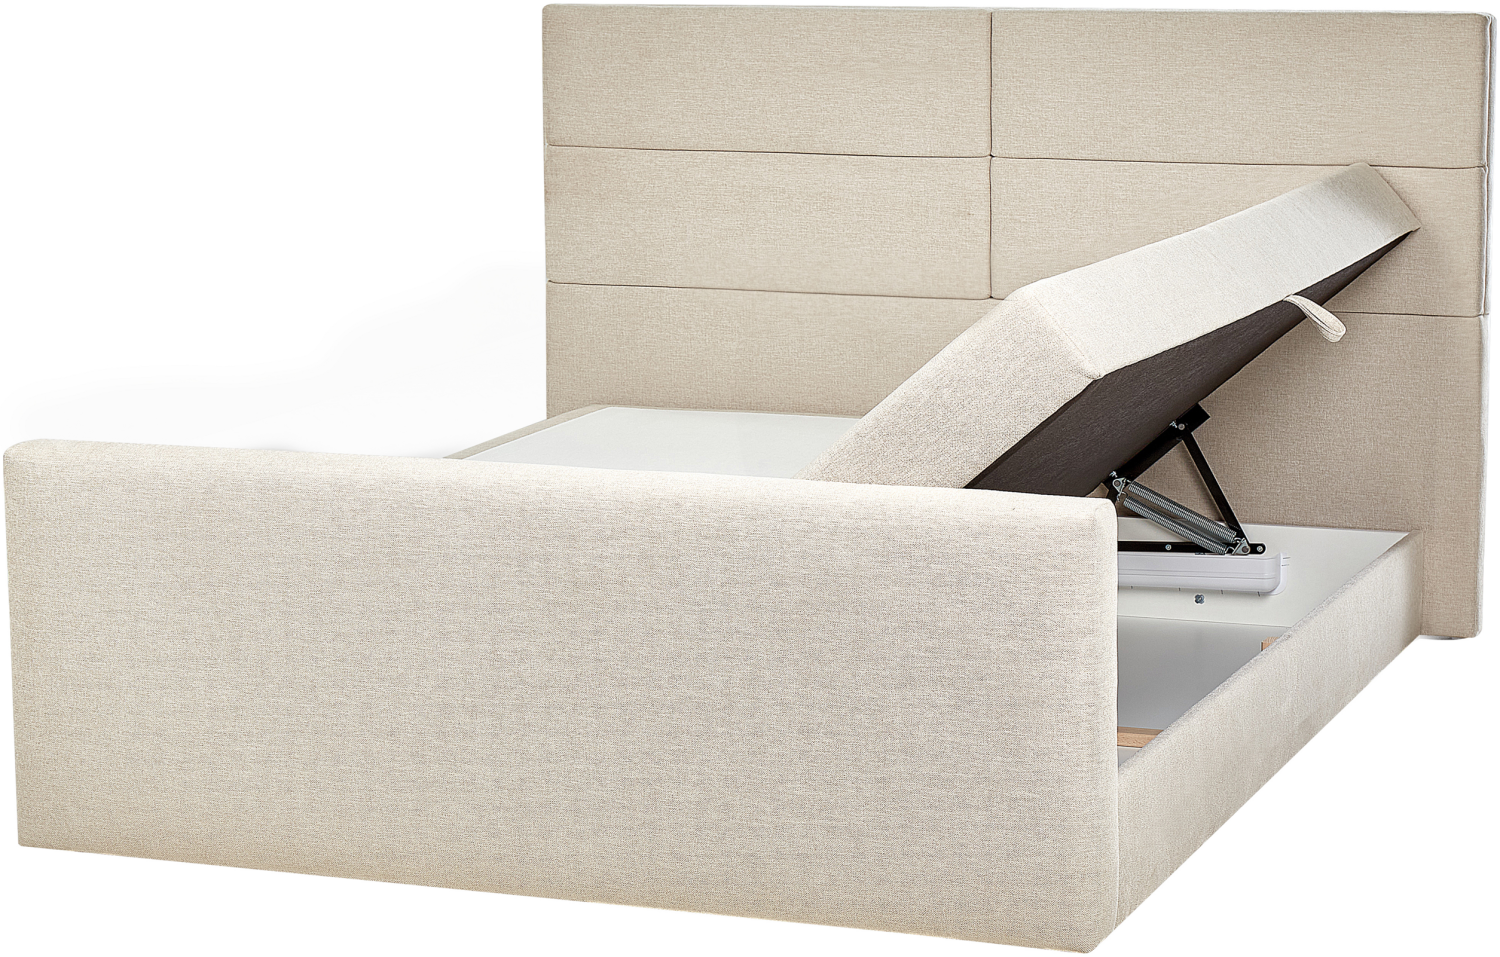 Boxspringbett Polsterbezug hellbeige mit Bettkasten hochklappbar 180 x 200 cm ARISTOCRAT Bild 1